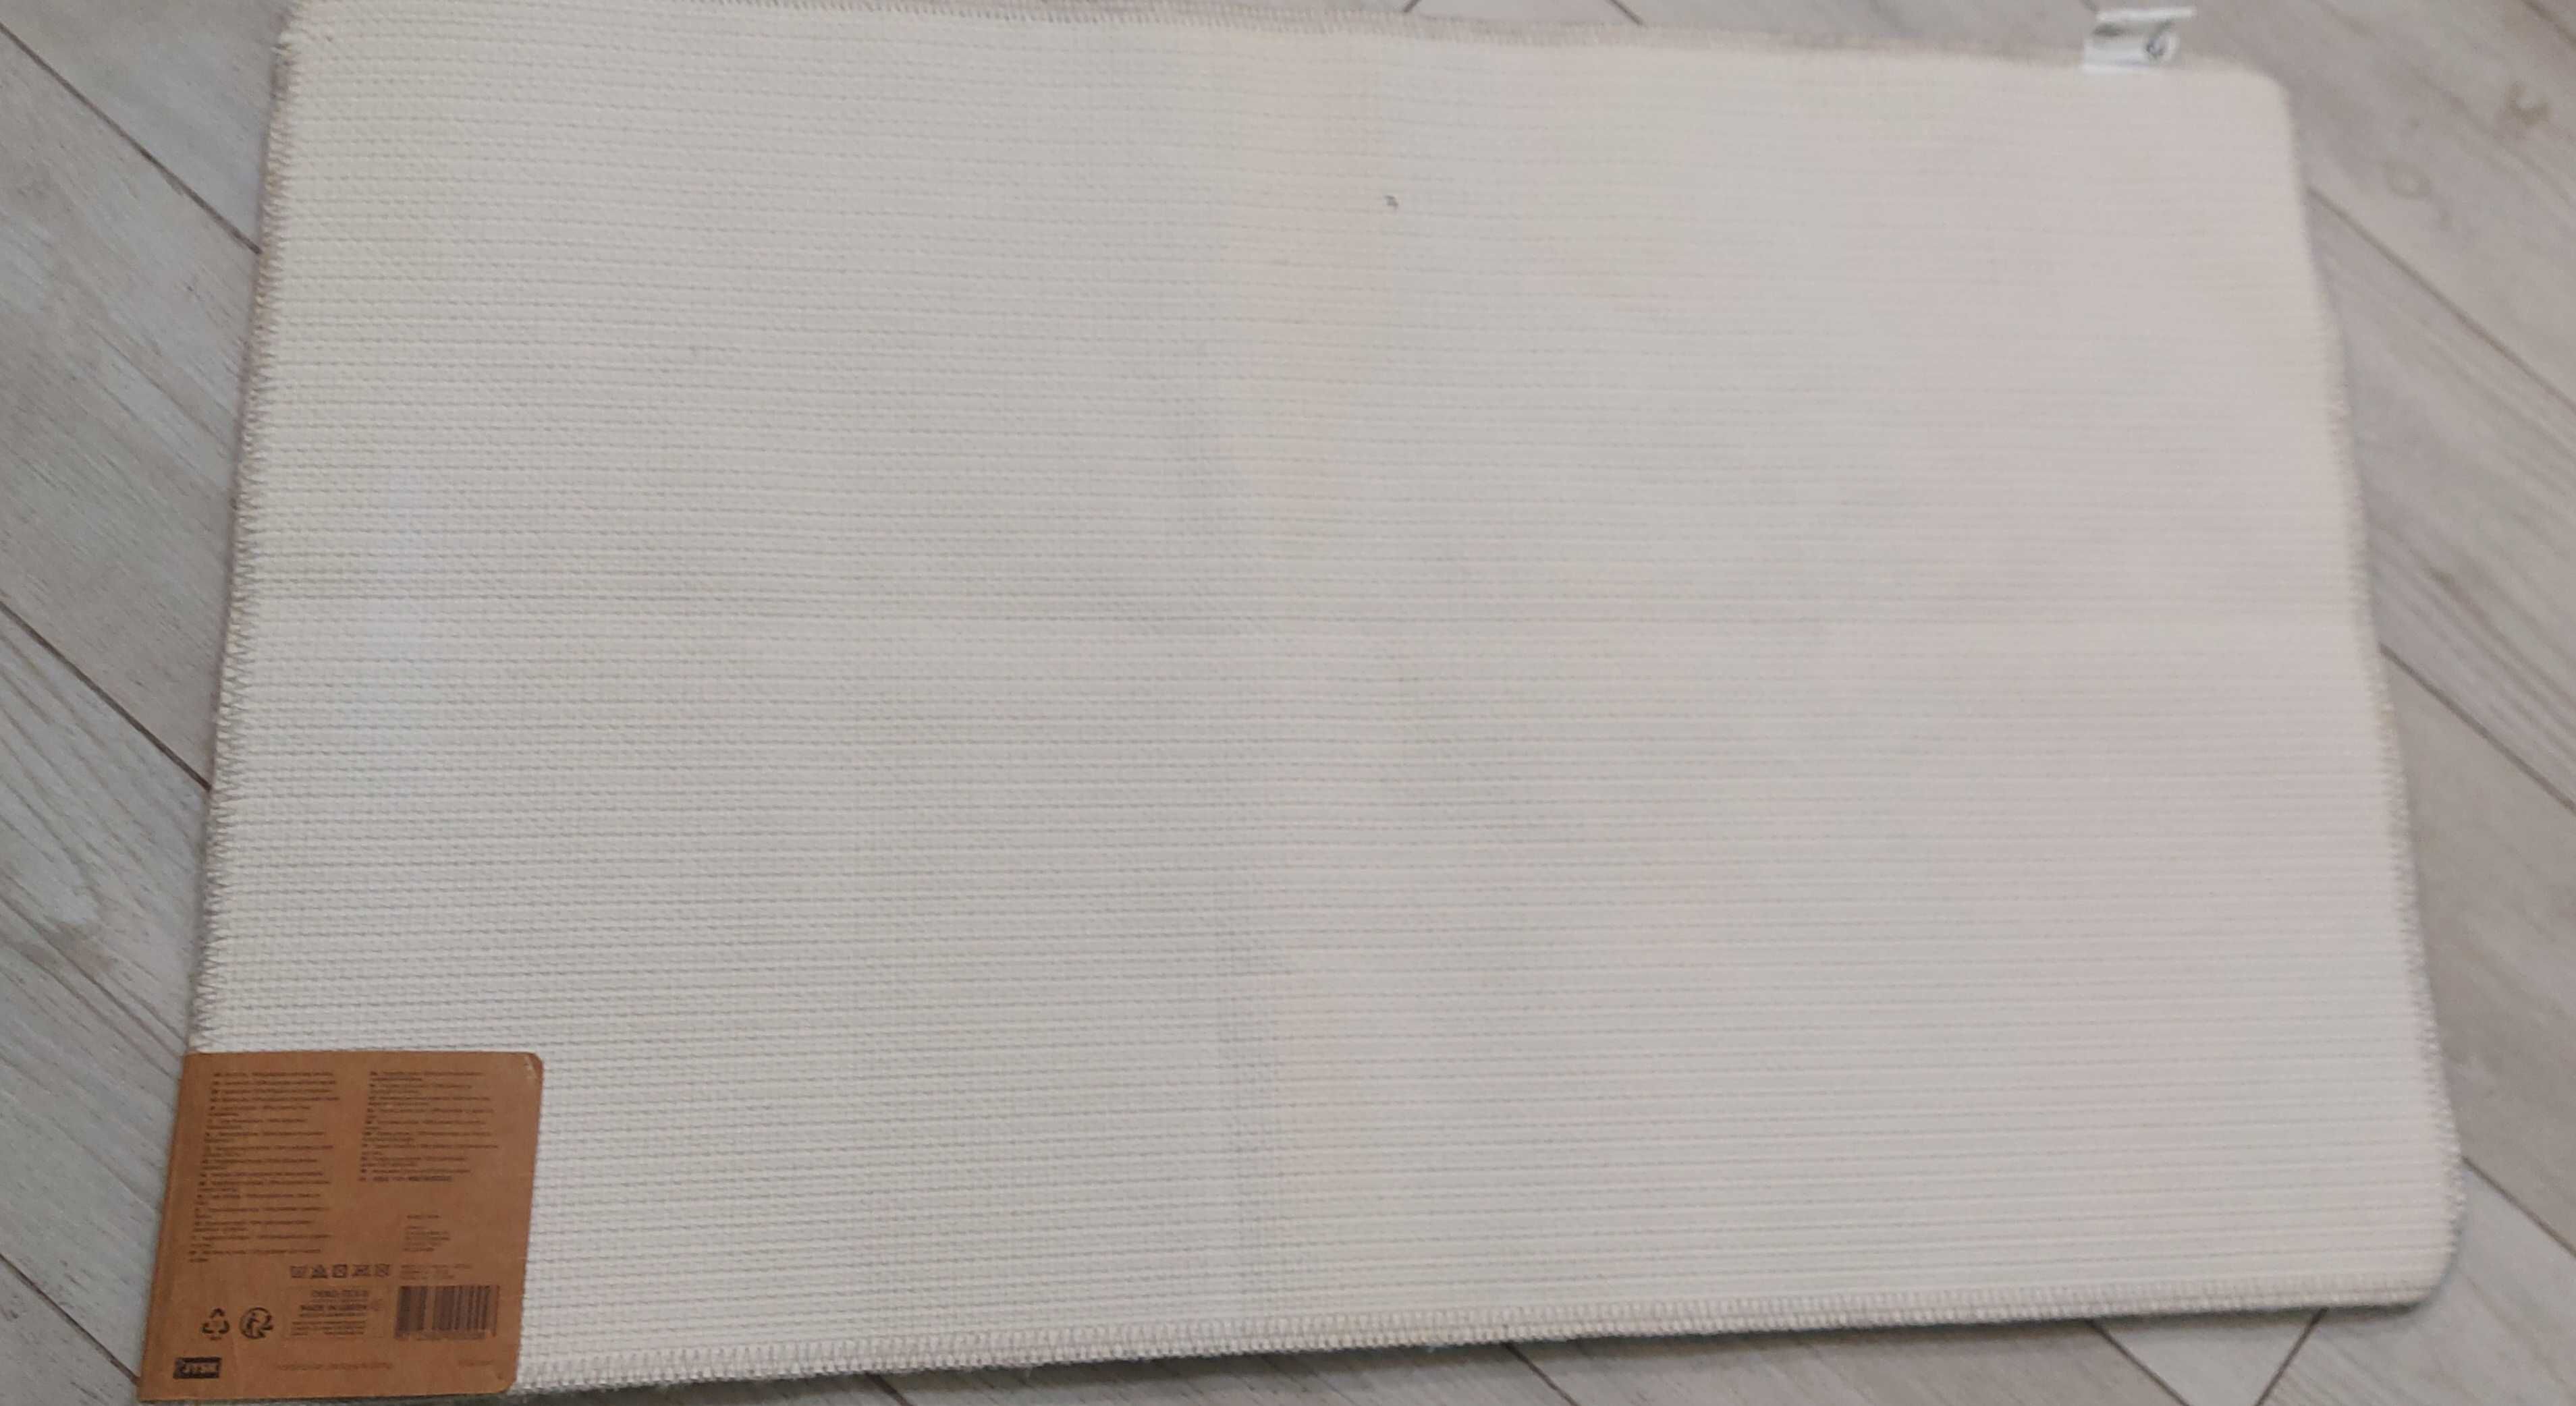 Килимок коврик для ванной JYSK 50 x 80